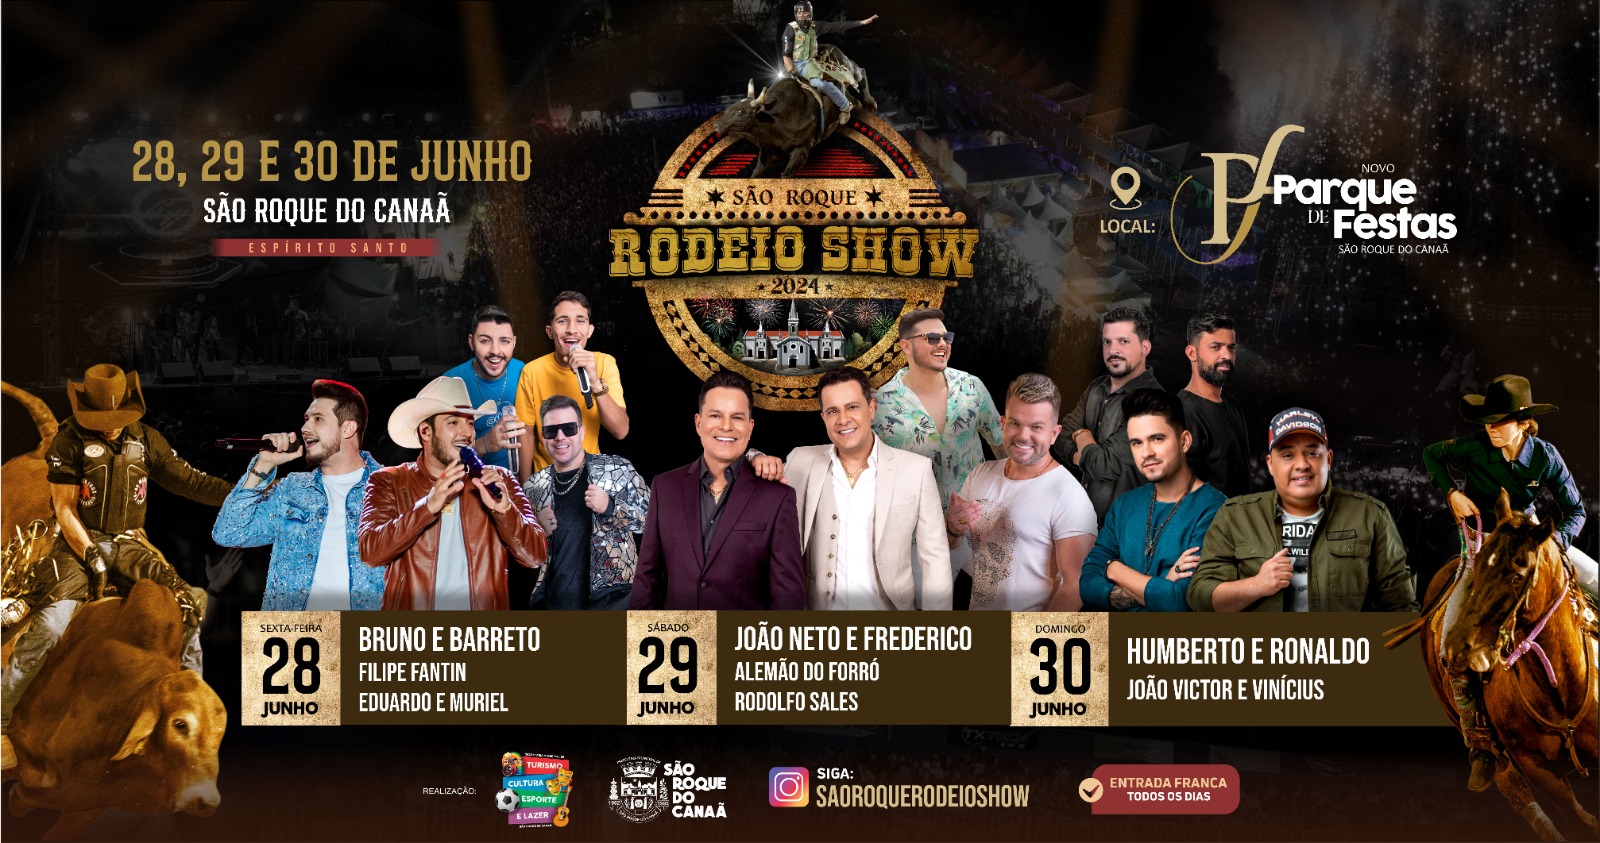 São Roque Rodeio Show acontece nos dias 28, 29 e 30 de junho.